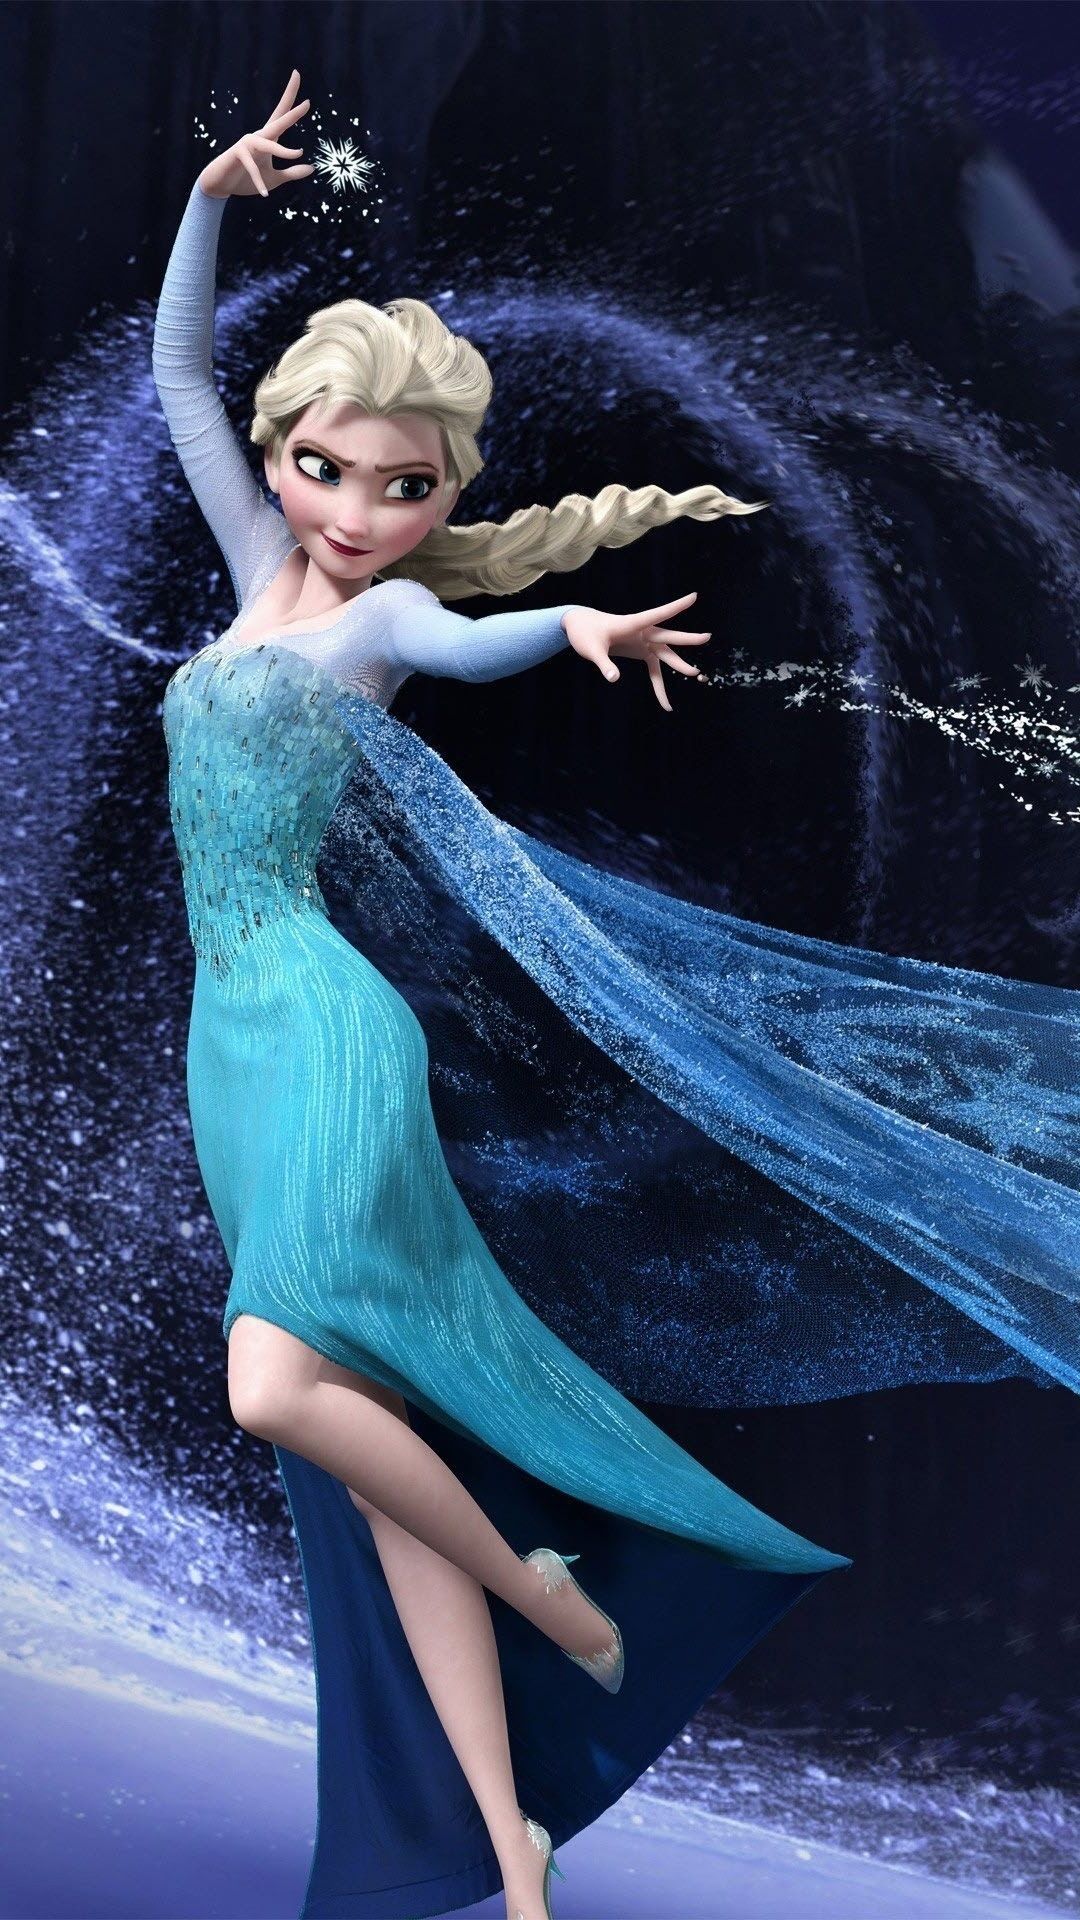 disney frozen elsa mobile wallpaper HD 1080x1920. Frozen wallpaper, Disney frozen elsa, Disney princess picture